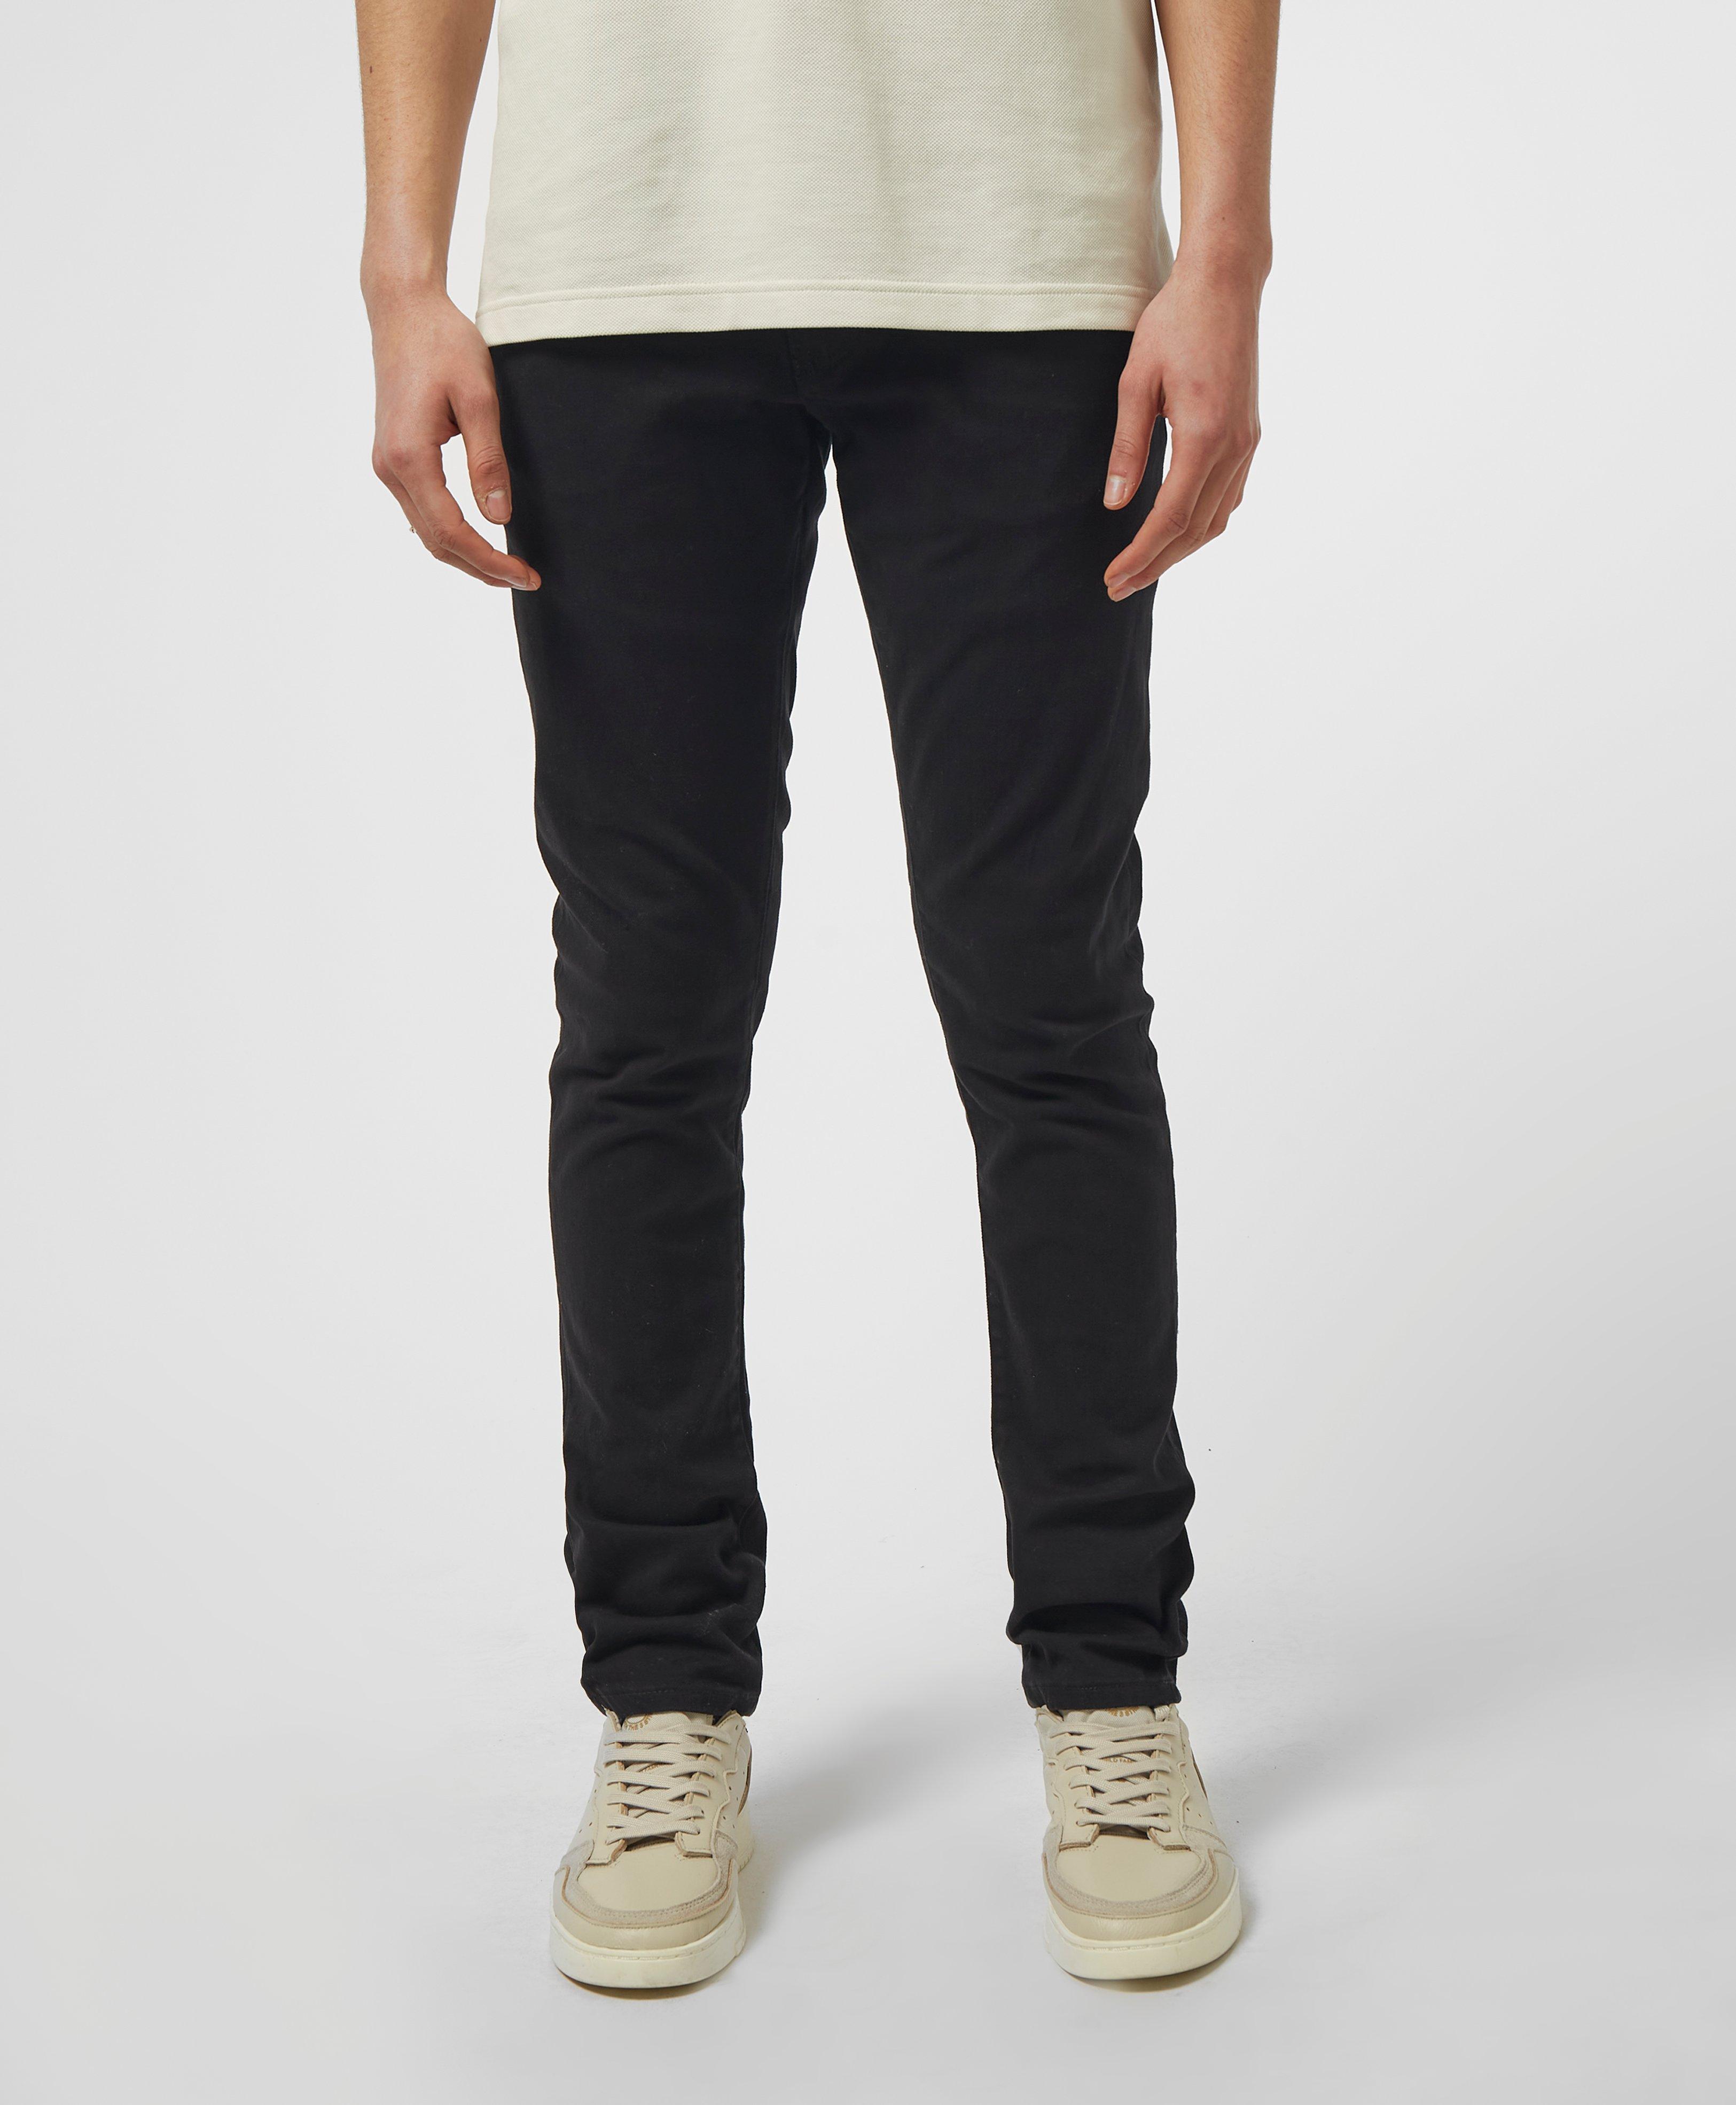 Armani Exchange Denim J14 Skinny Rinse Jeans in Black for Men - Lyst